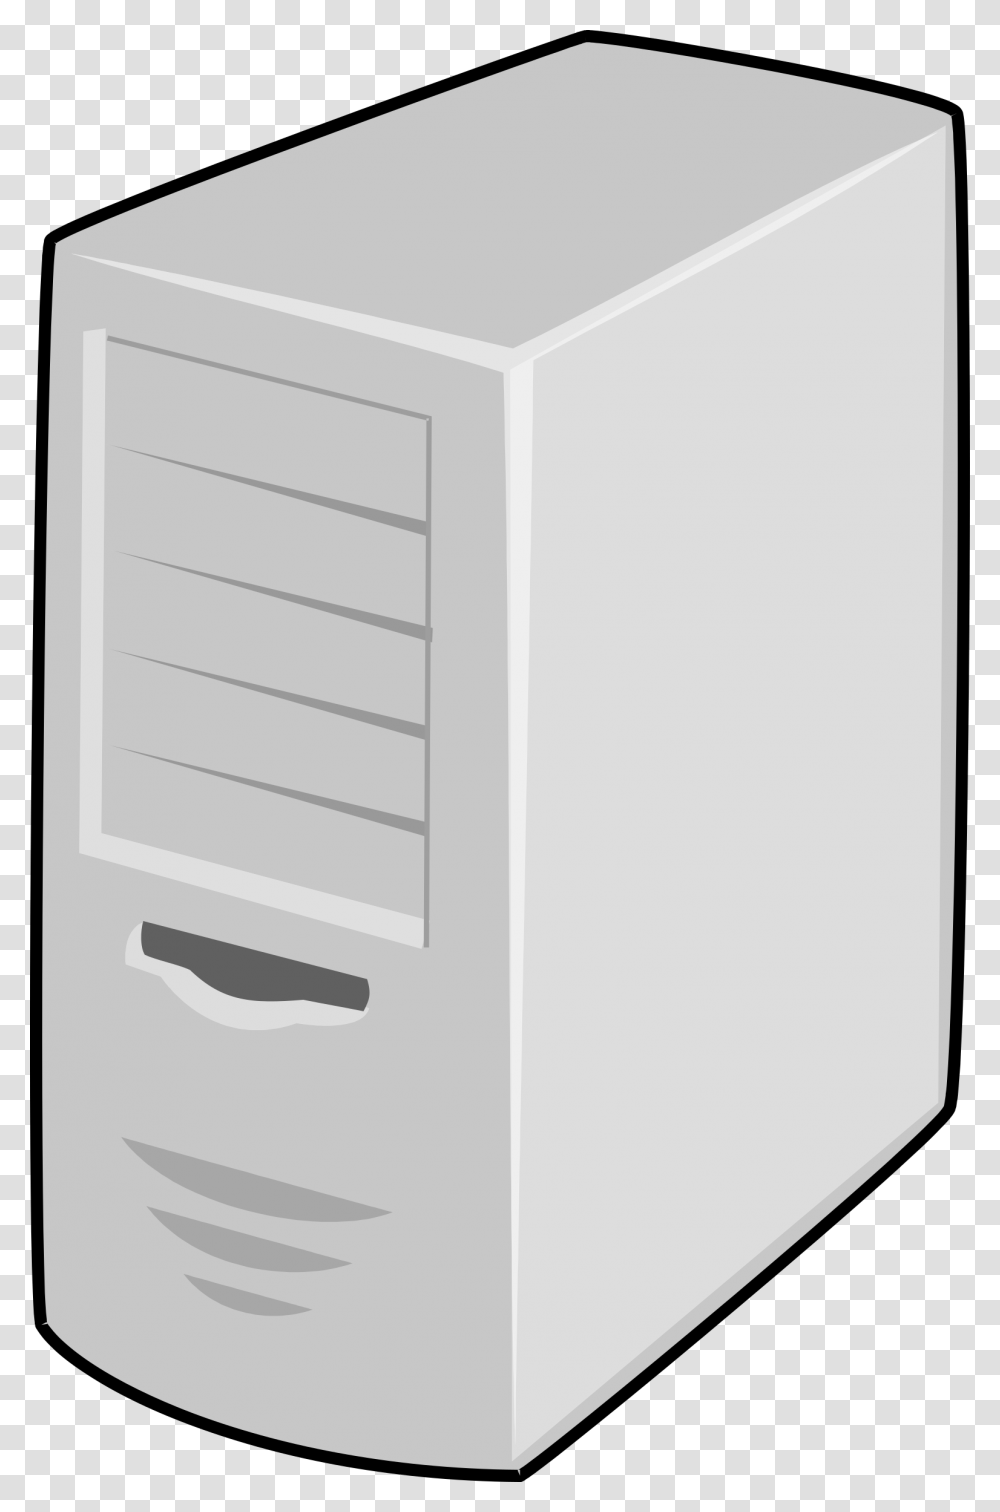 Server, Electronics, Computer, Hardware, Mailbox Transparent Png